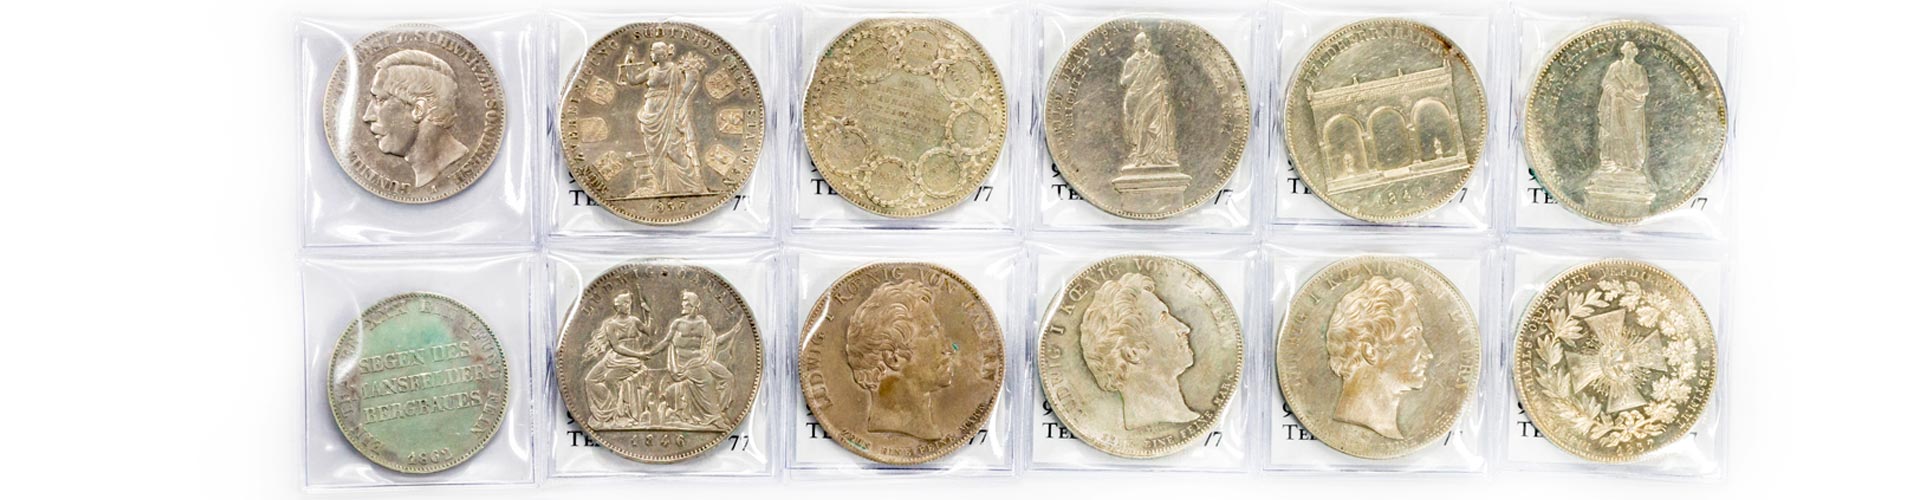 12 historische Sammlermünzen unter anderem Mansfelder Bergbau